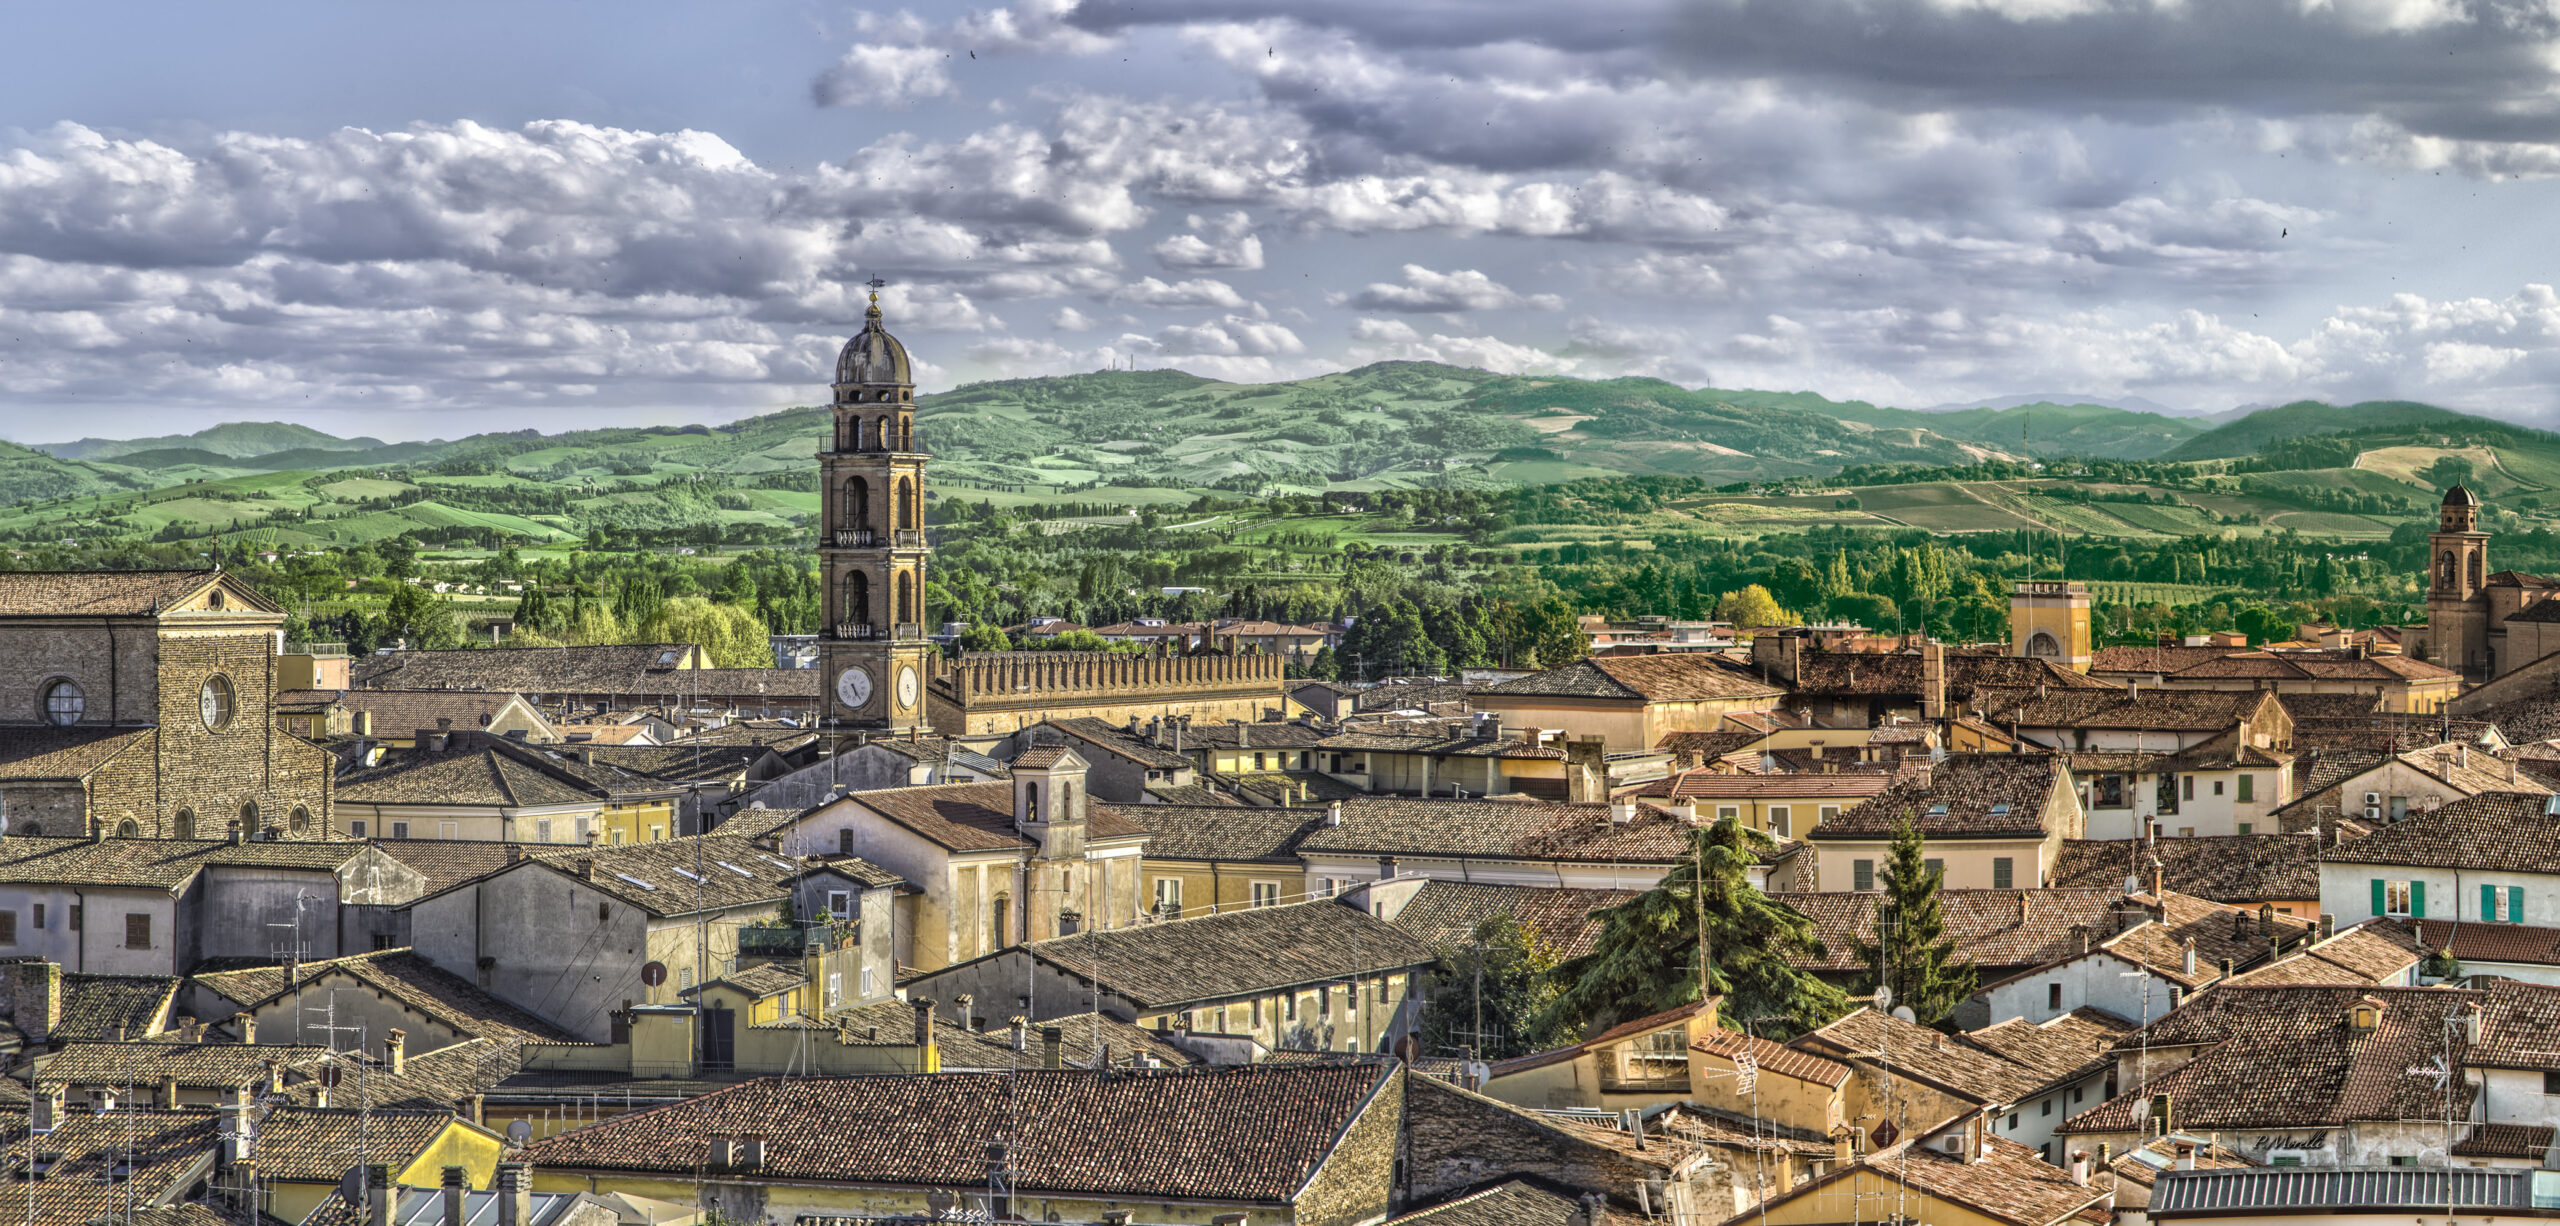 Panoramica di Faenza. Crediti per la foto: Paolo Morelli